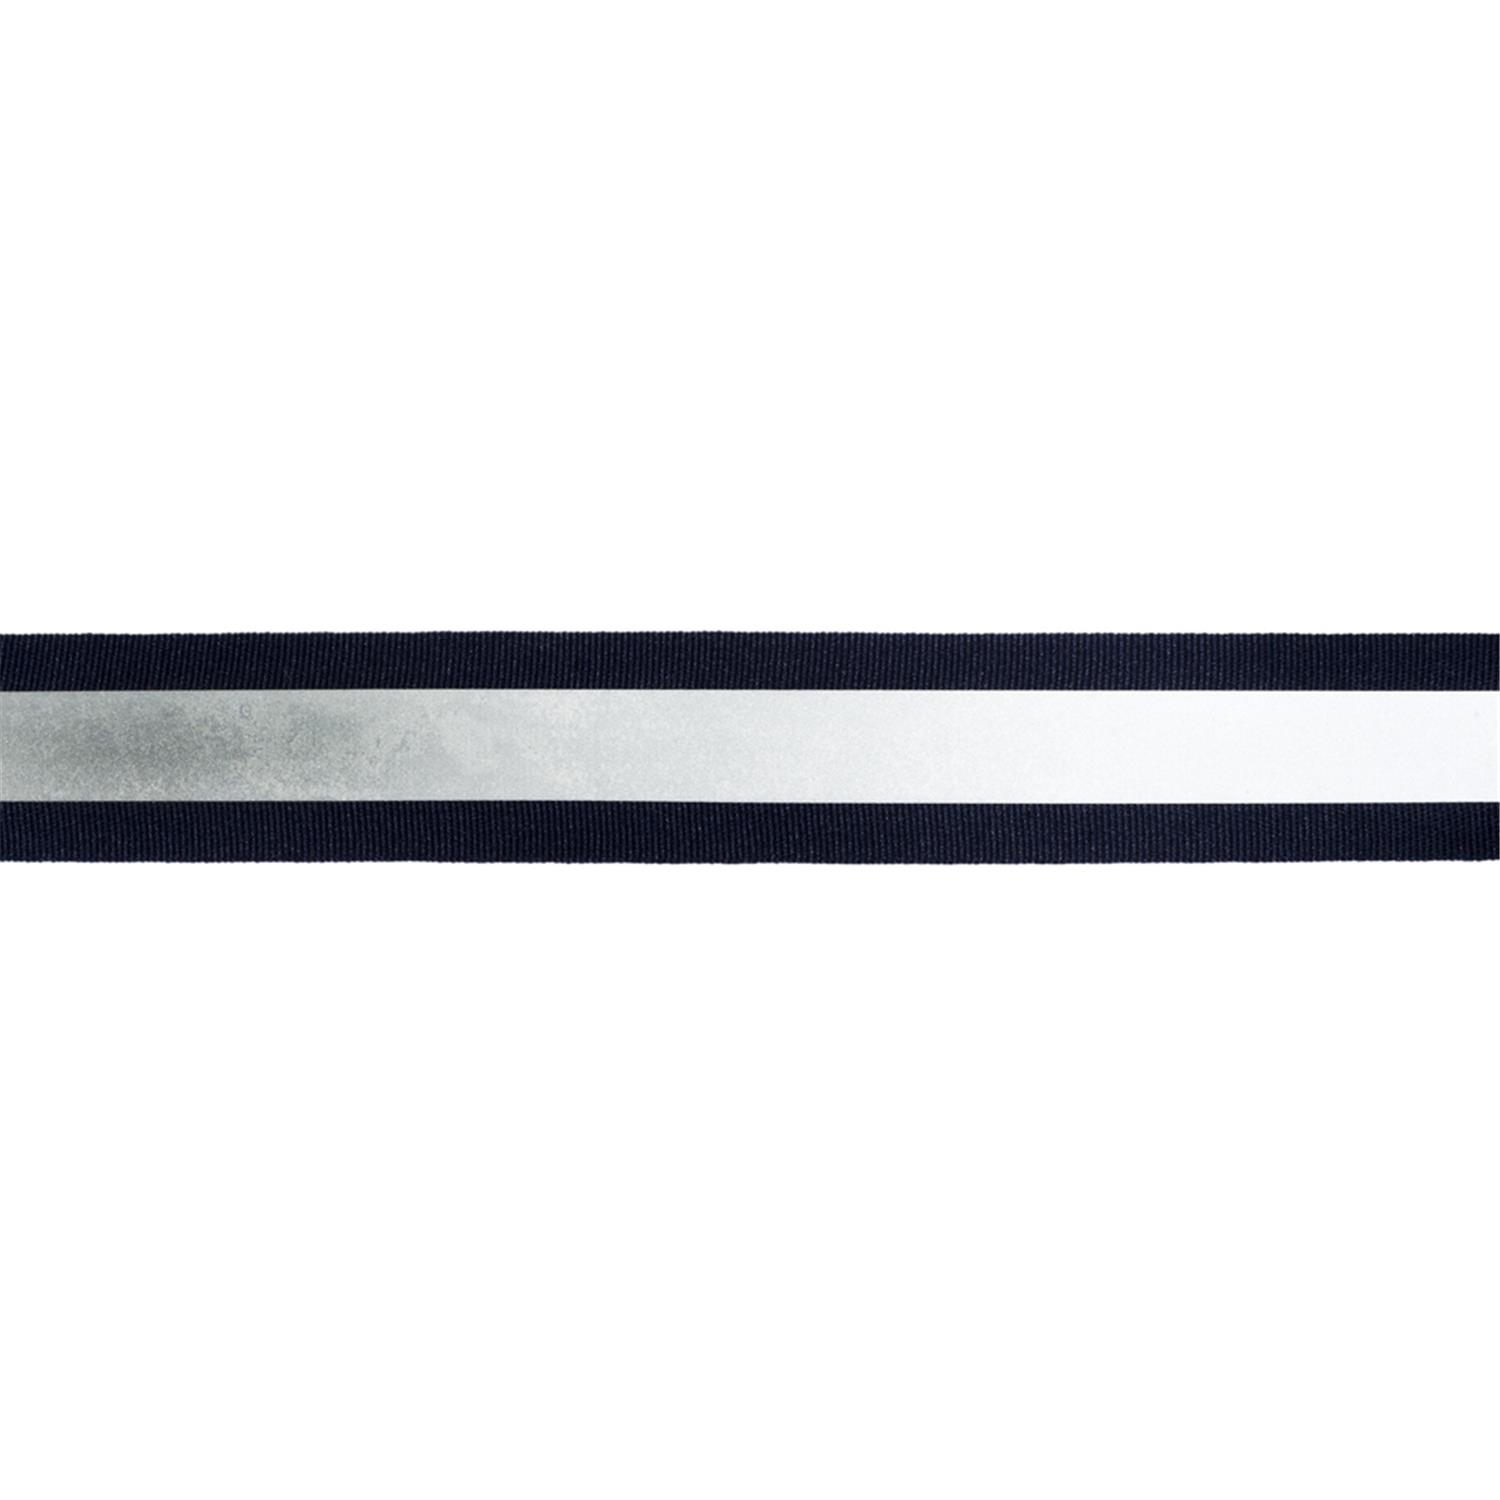 5 m Reflektor- / Leuchtband, 20mm breit Farbe: schwarz-silber